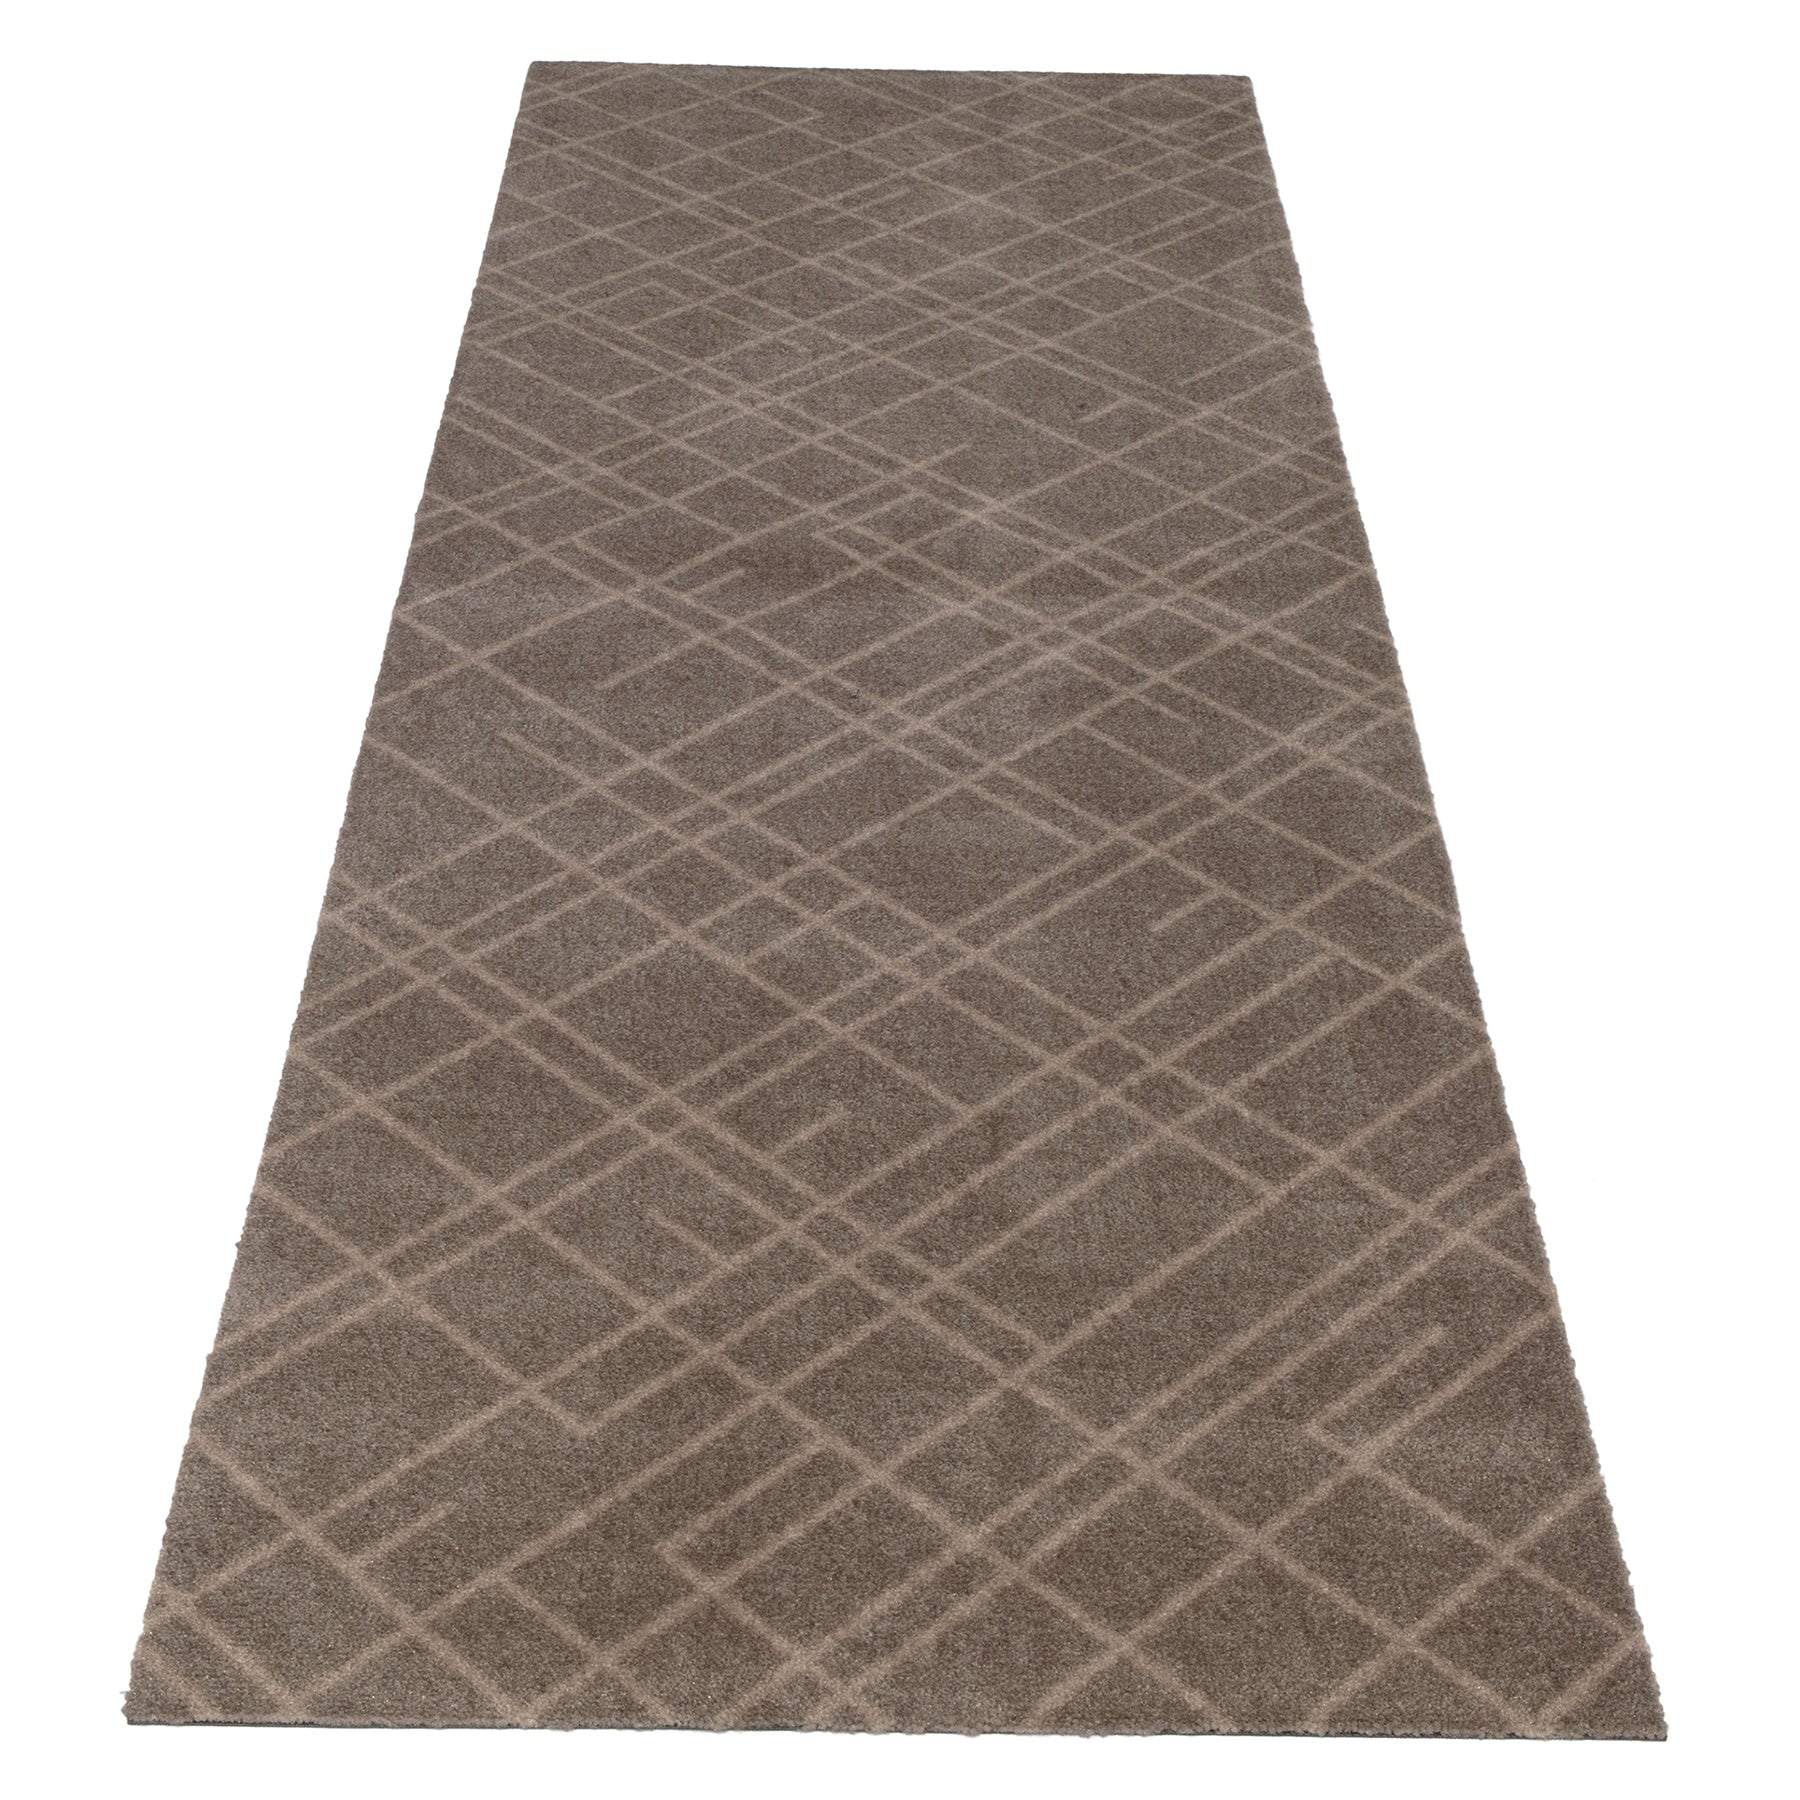 Bodenmatte 67 x 200 cm - Linien/Sand